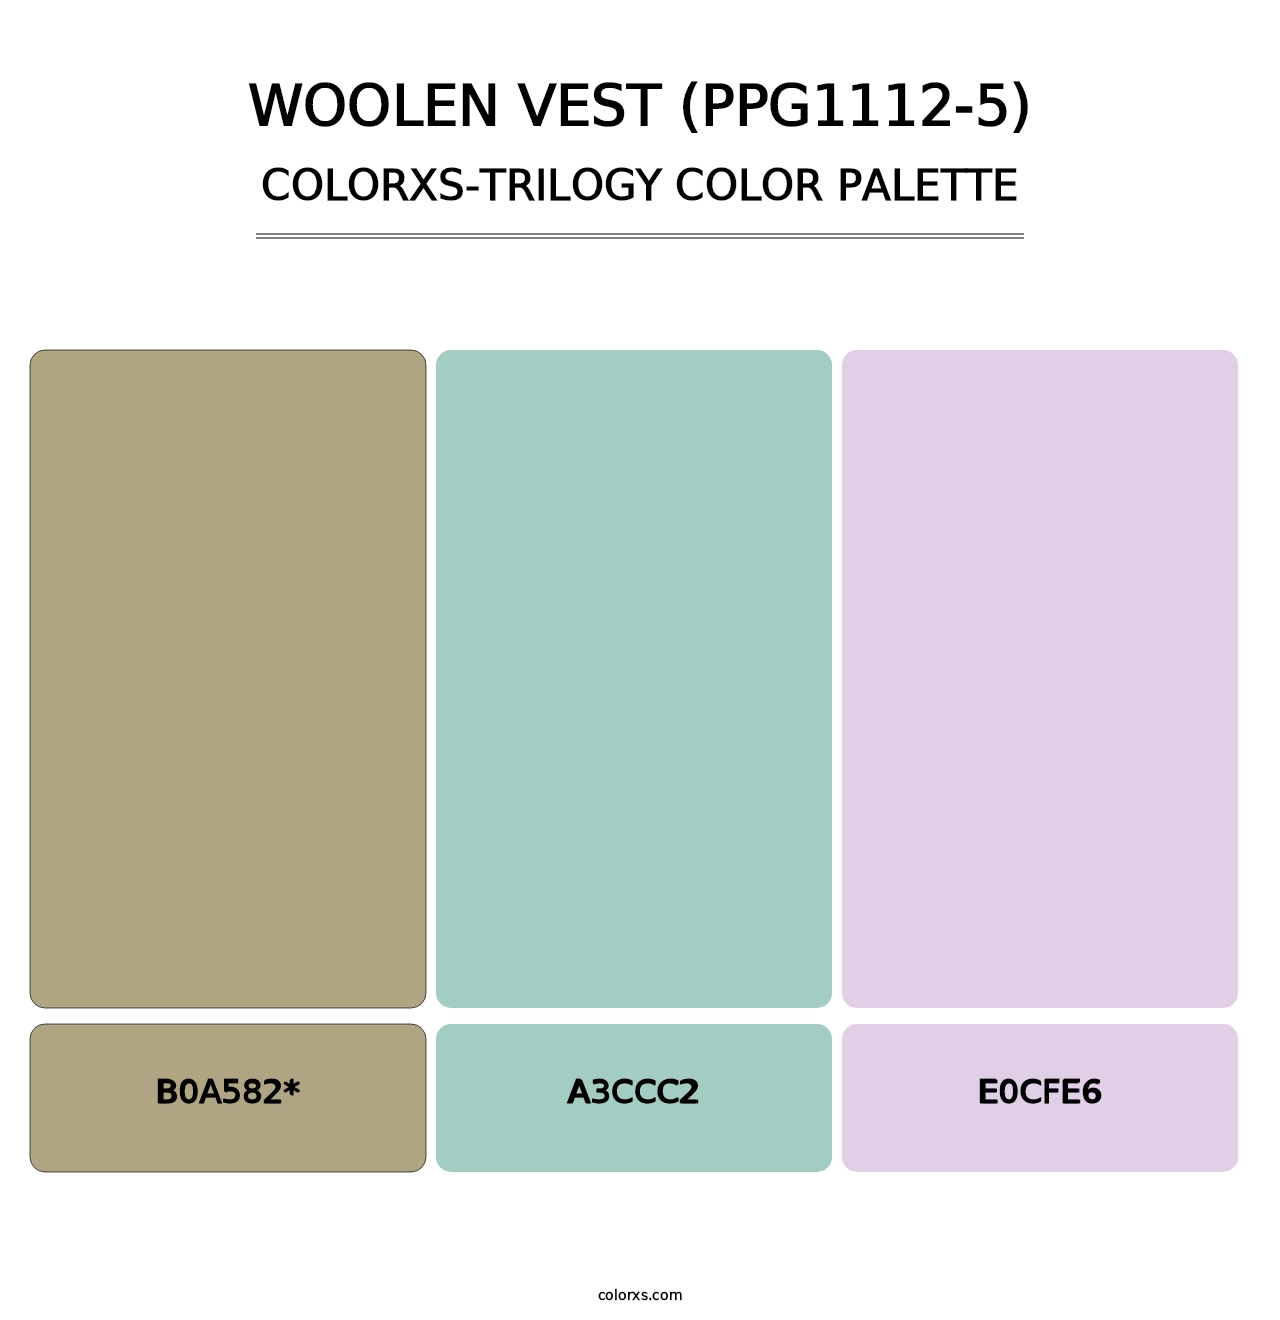 Woolen Vest (PPG1112-5) - Colorxs Trilogy Palette